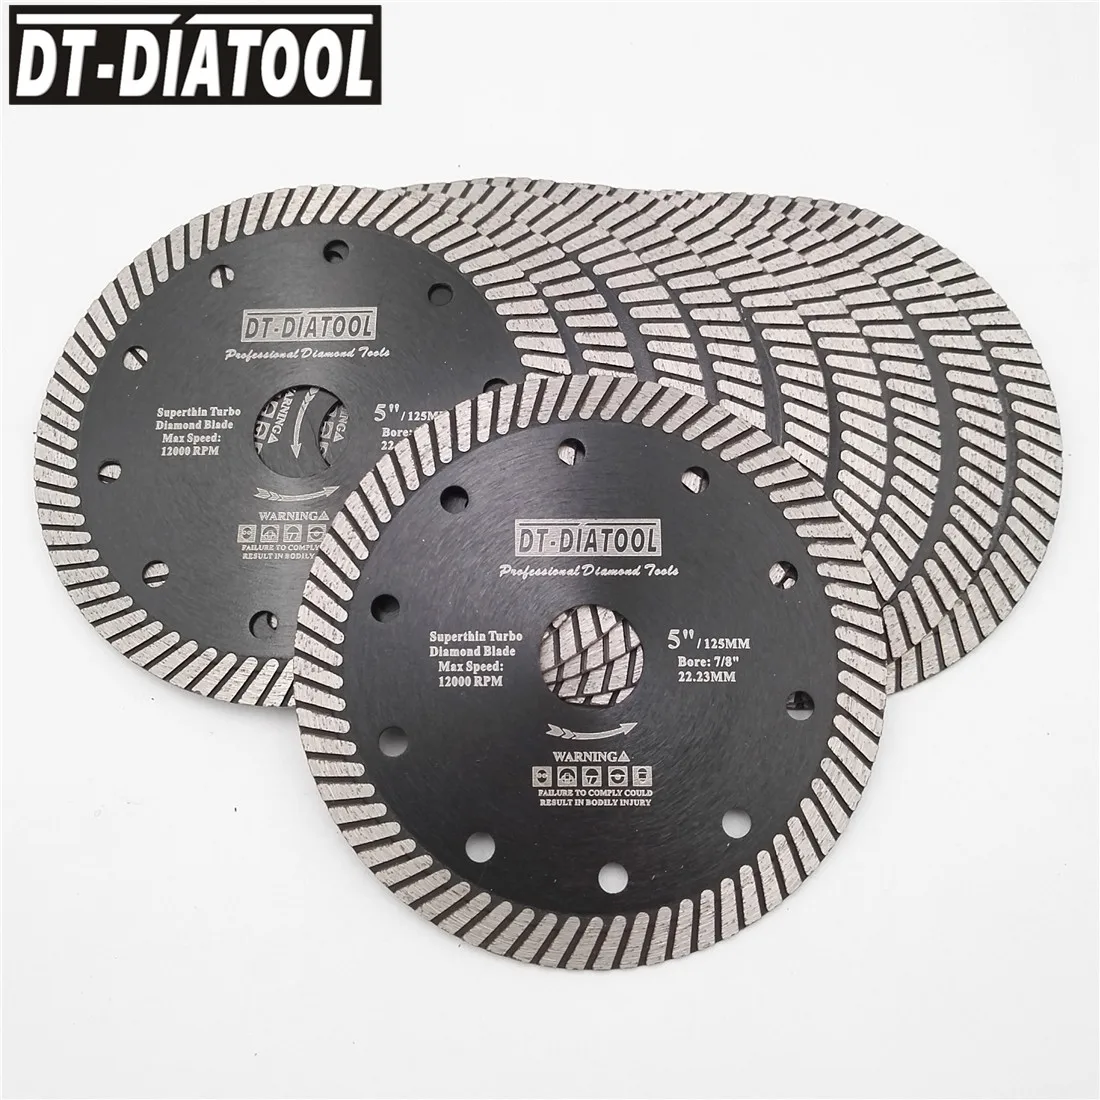 DT-DIATOOL 10pieces 125mm/5